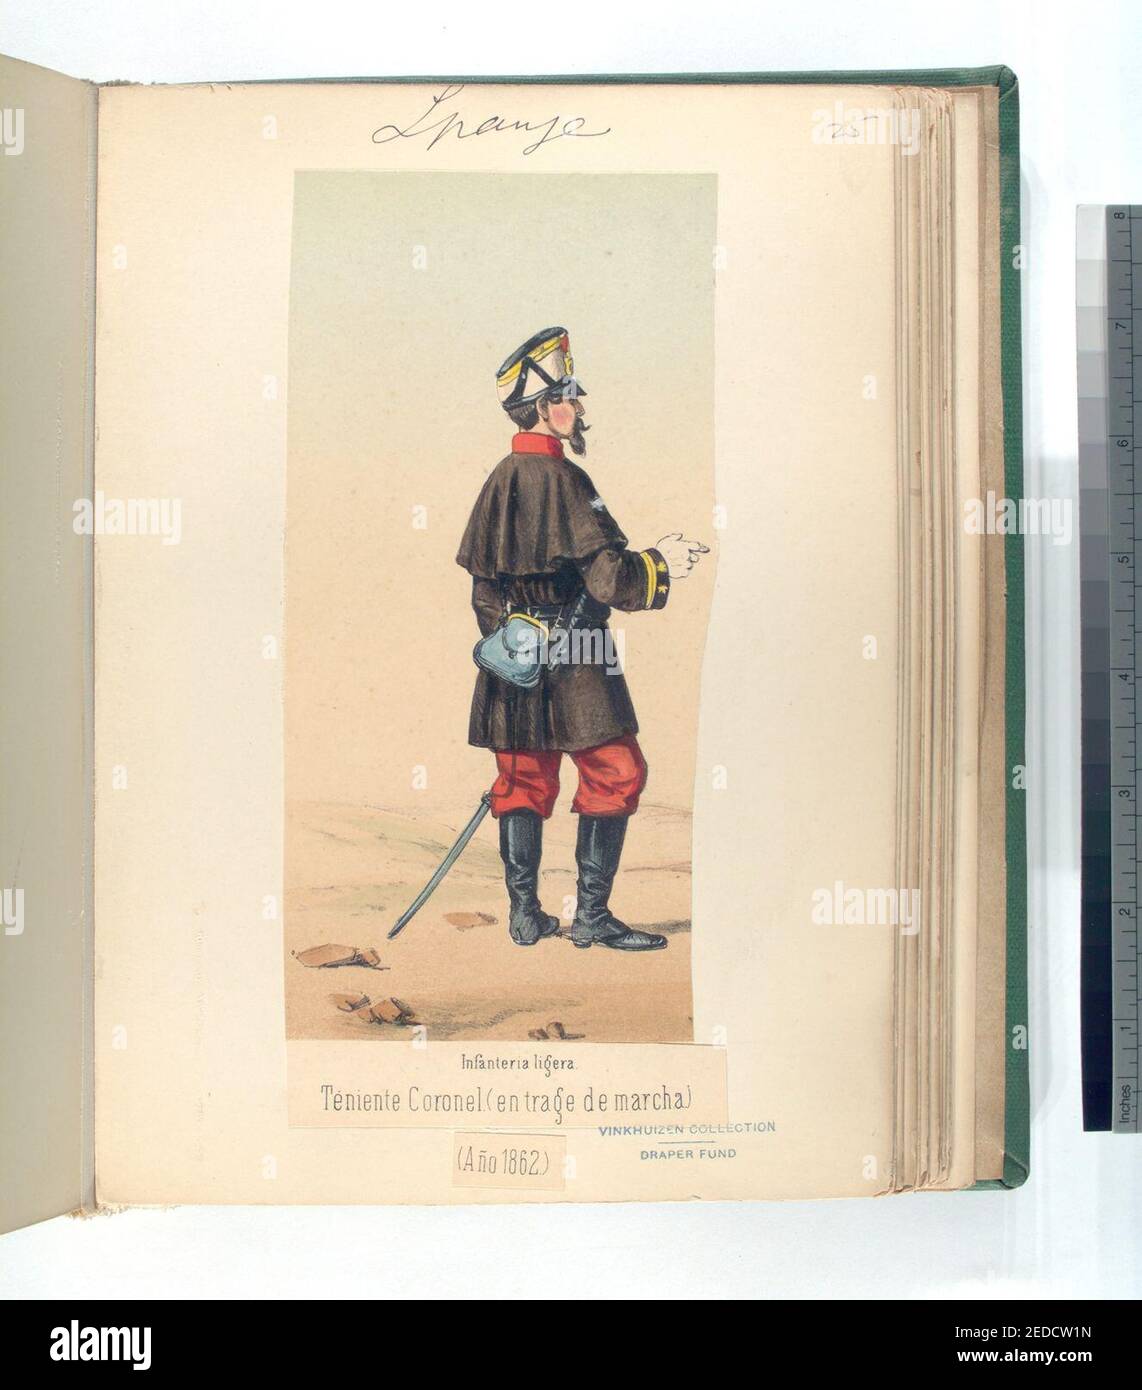 Infanteria ligera. Teniente Coronel (en trage de marcha). 1862 Stock Photo